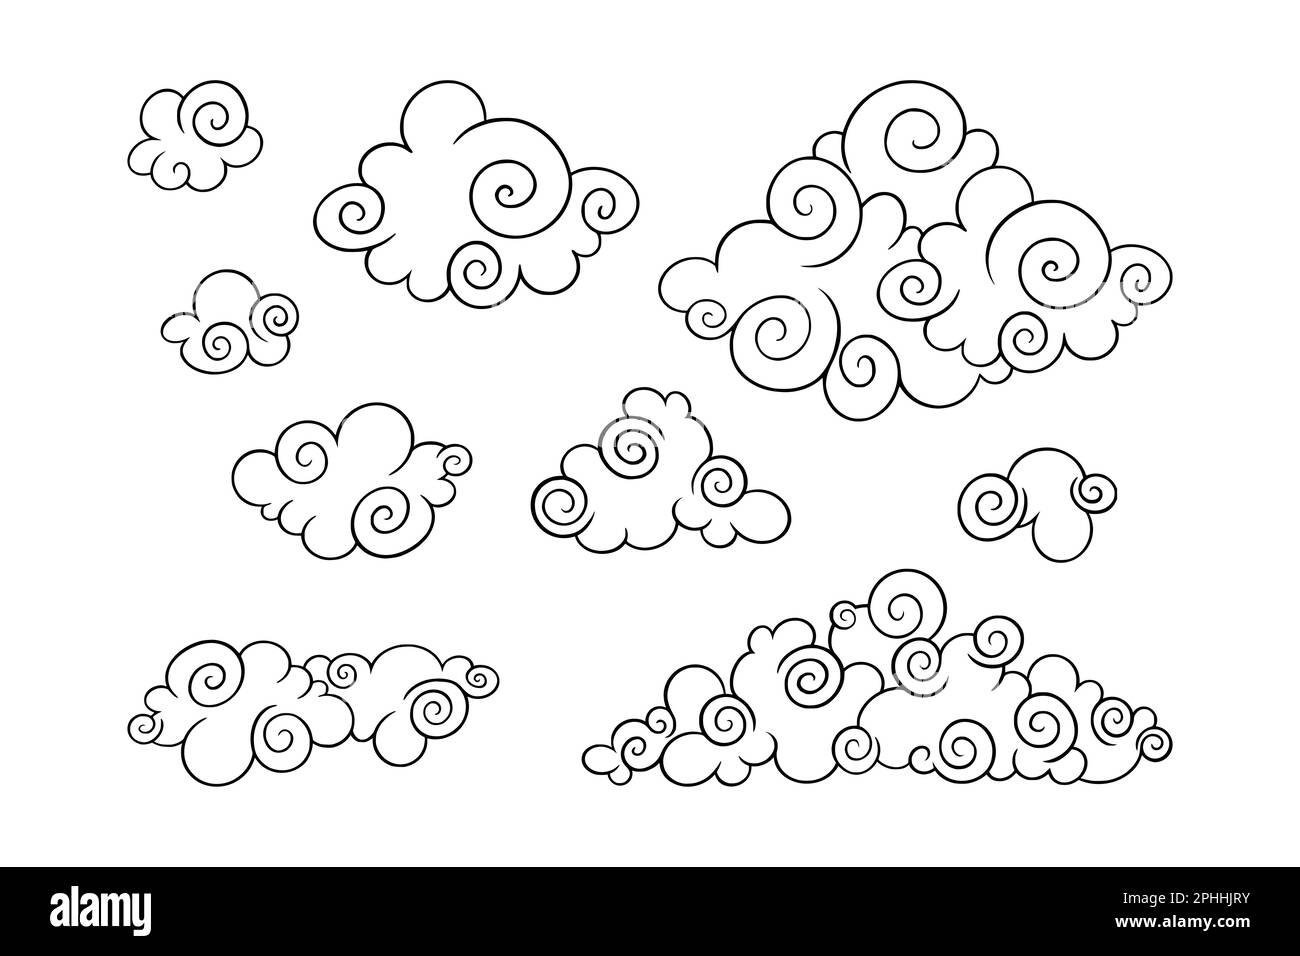 Des nuages chinois se sont mis en place. Des nuages asiatiques décoratifs pour des motifs festifs. Illustration vectorielle isolée sur fond blanc Illustration de Vecteur